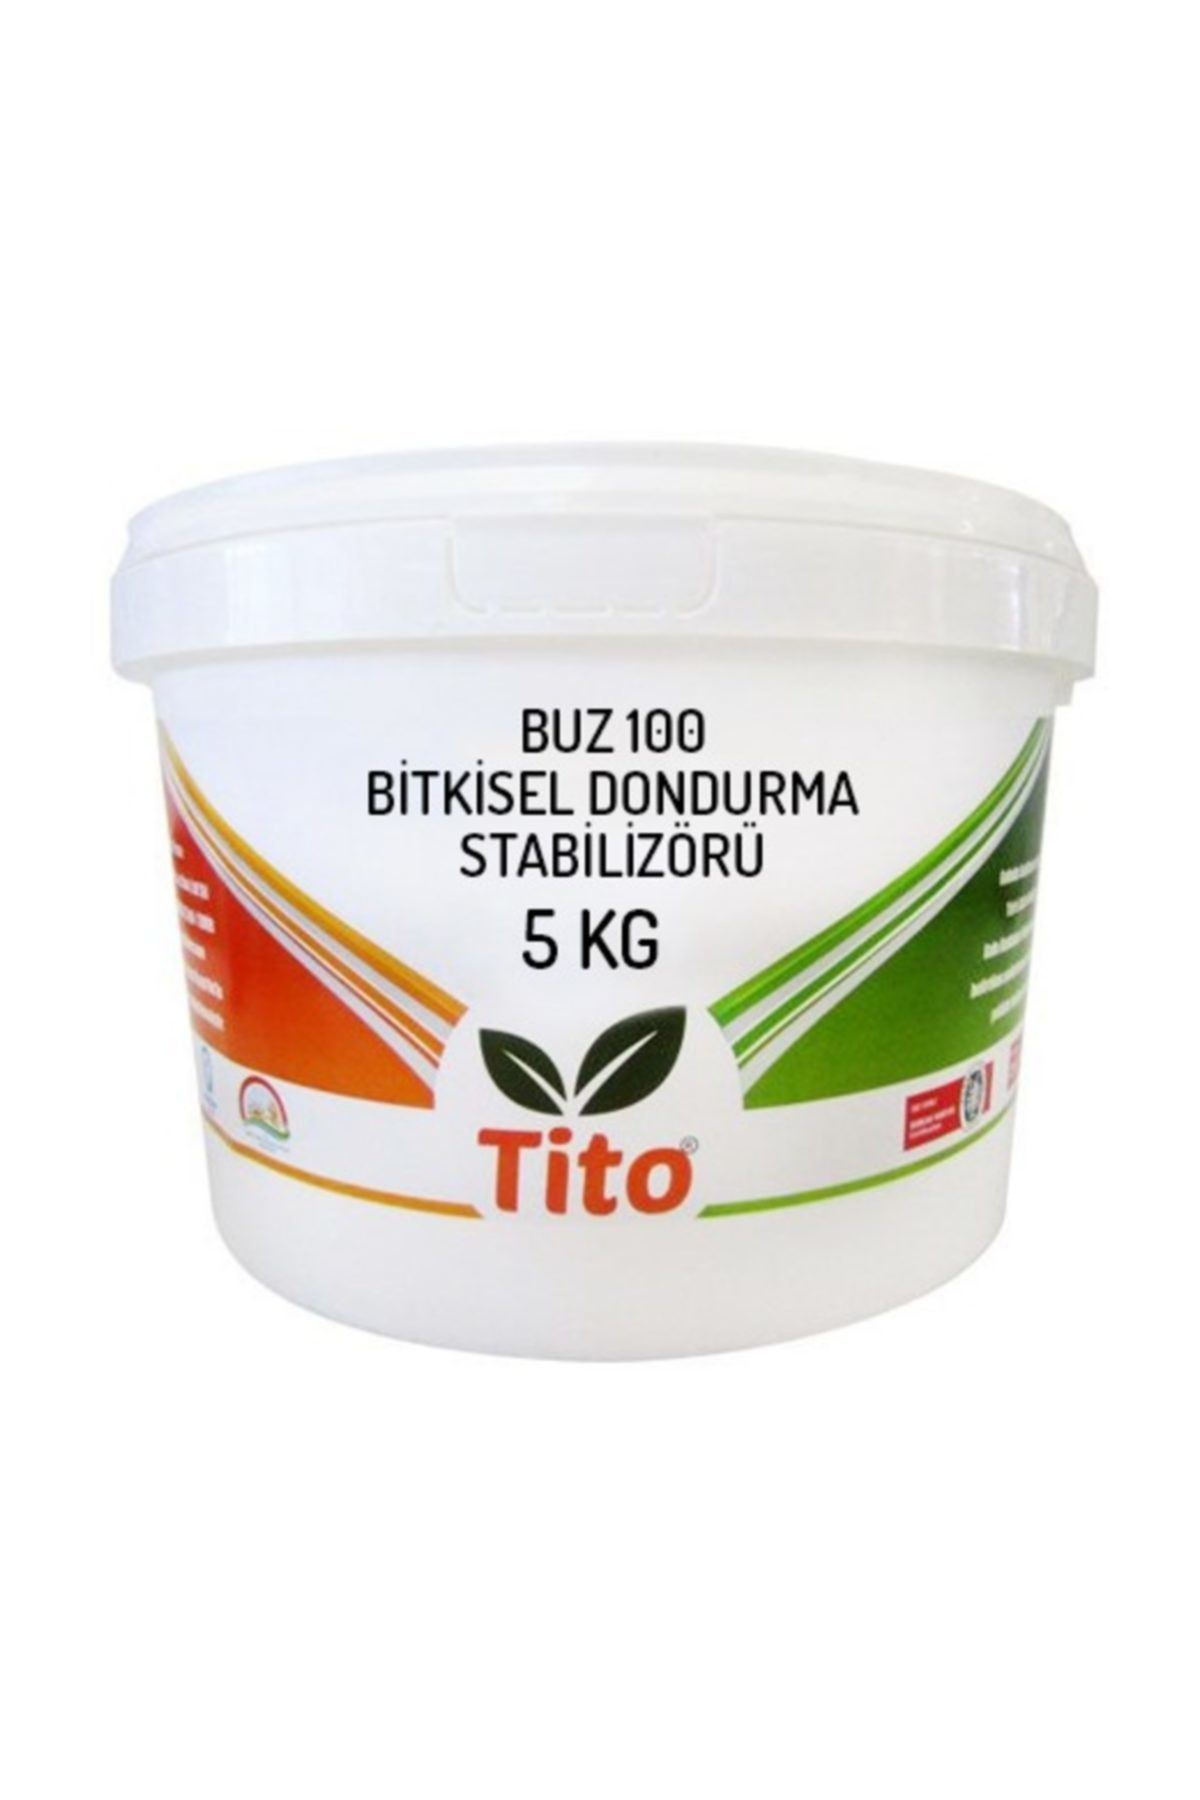 tito Buz100 Bitkisel Dondurma Stabilizörü 5 kg